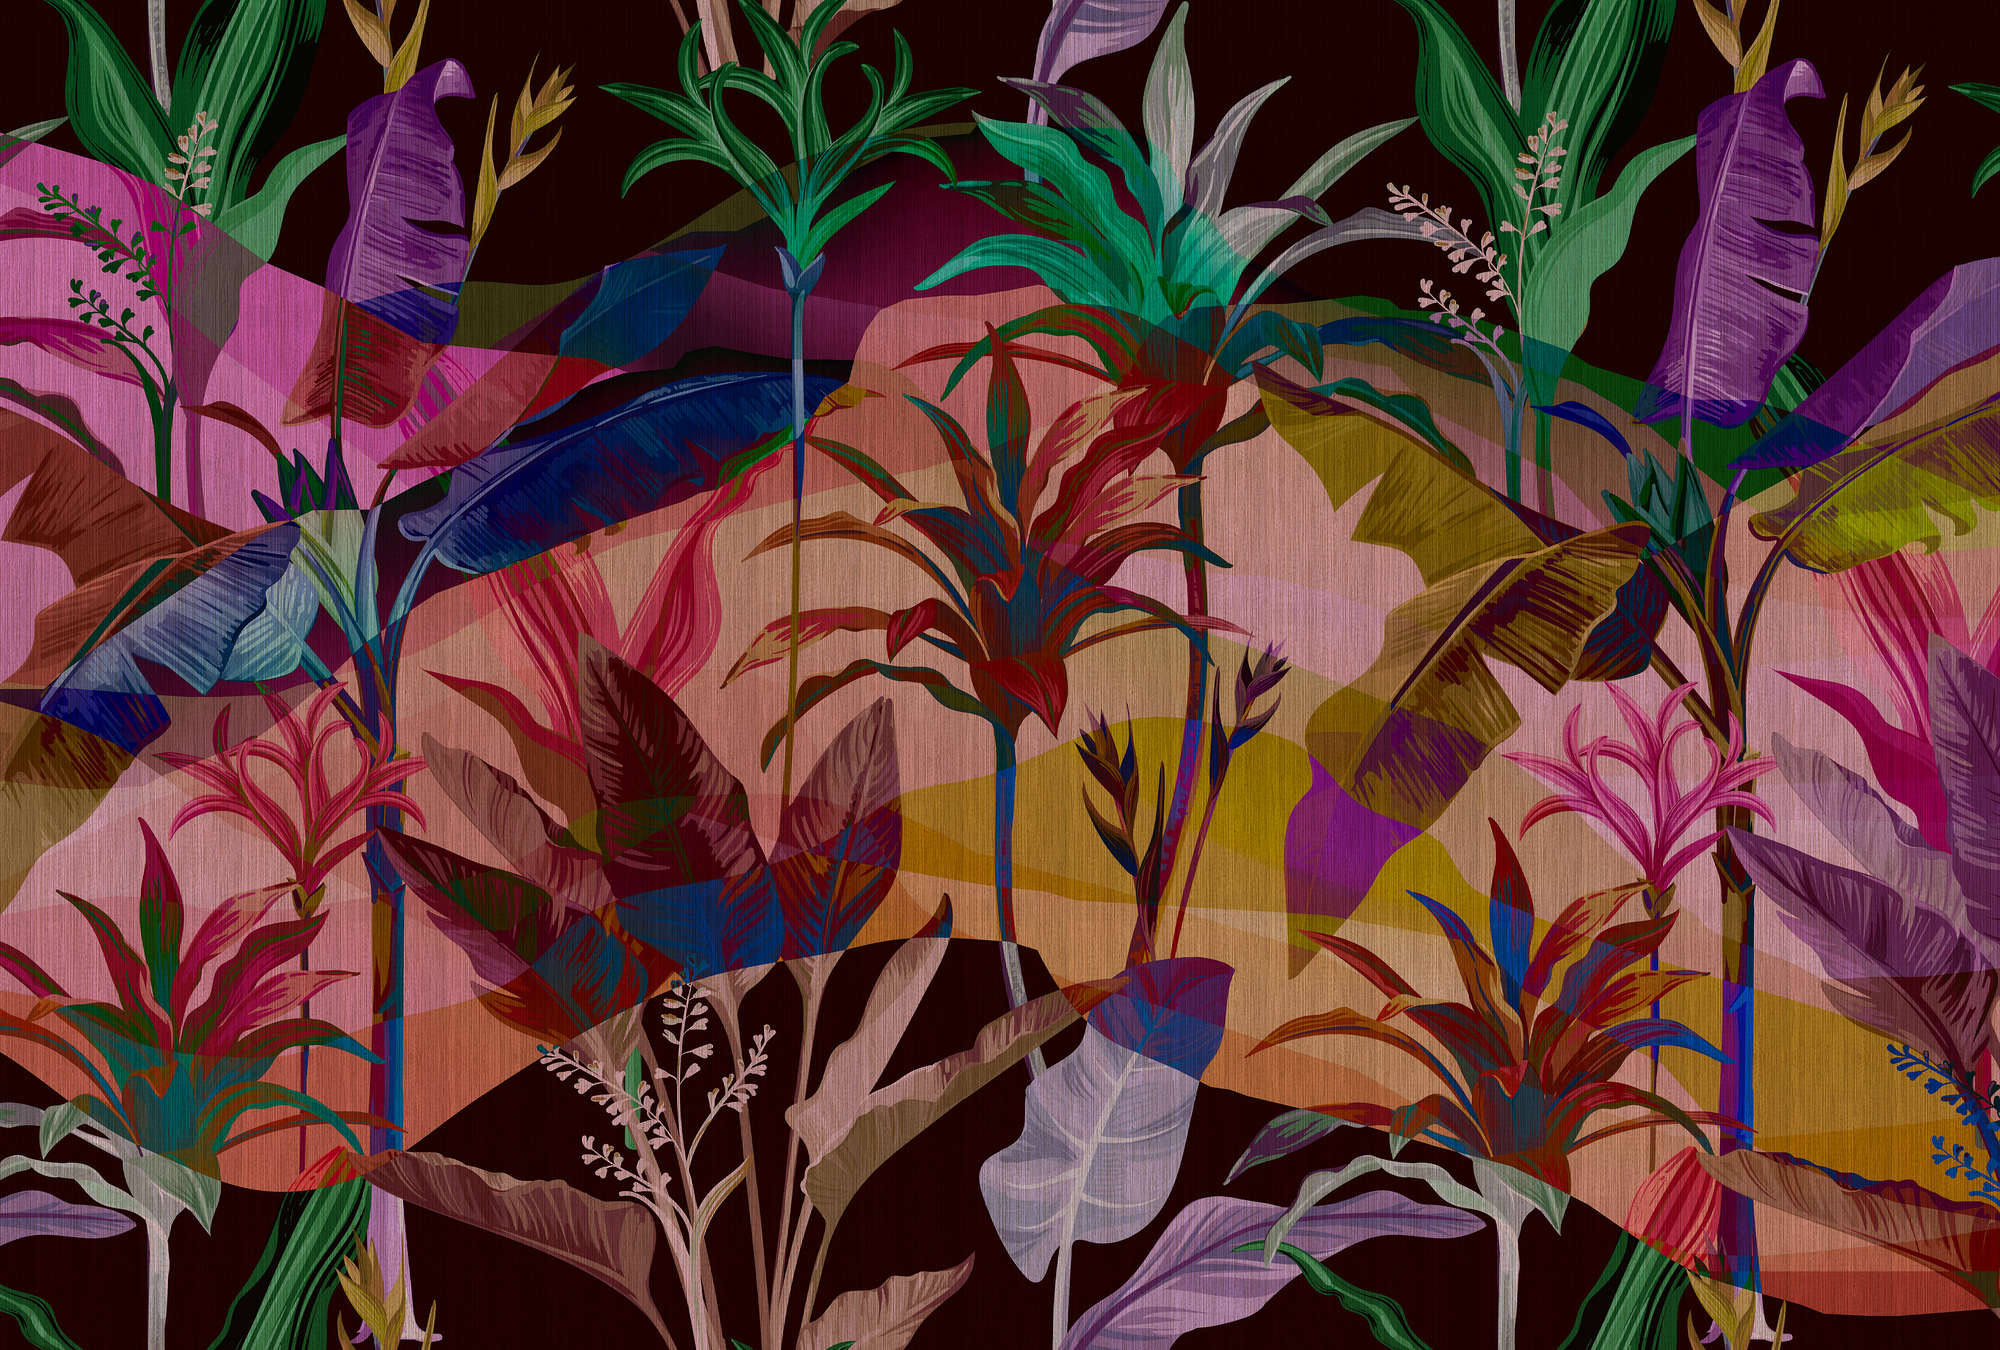             Palmyra 1 - Papier peint jungle feuilles colorées & abstraites
        